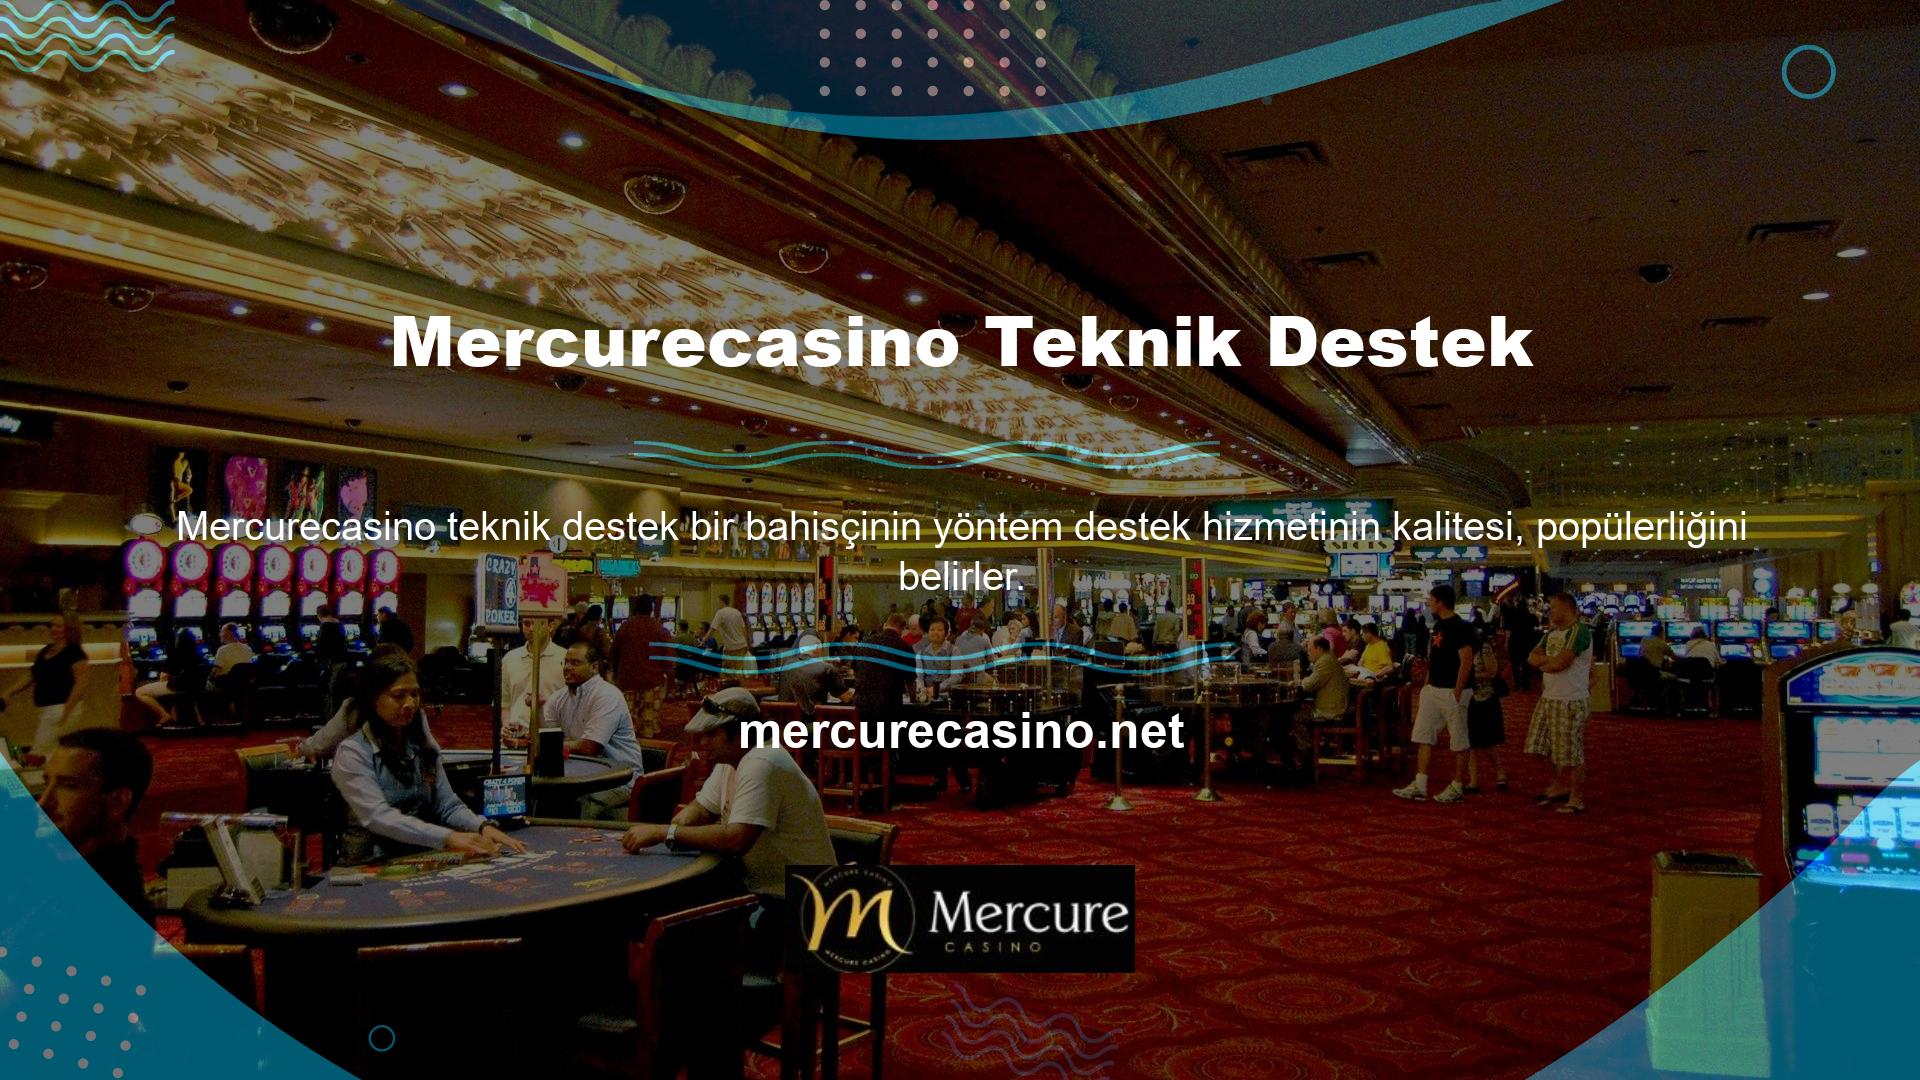 Mercurecasino Method'un destek hizmeti resmi web sitesinde yer almaktadır ve program kullanıcıları için hafta sonları ve tatil günleri hariç 24 saat çalışmaktadır